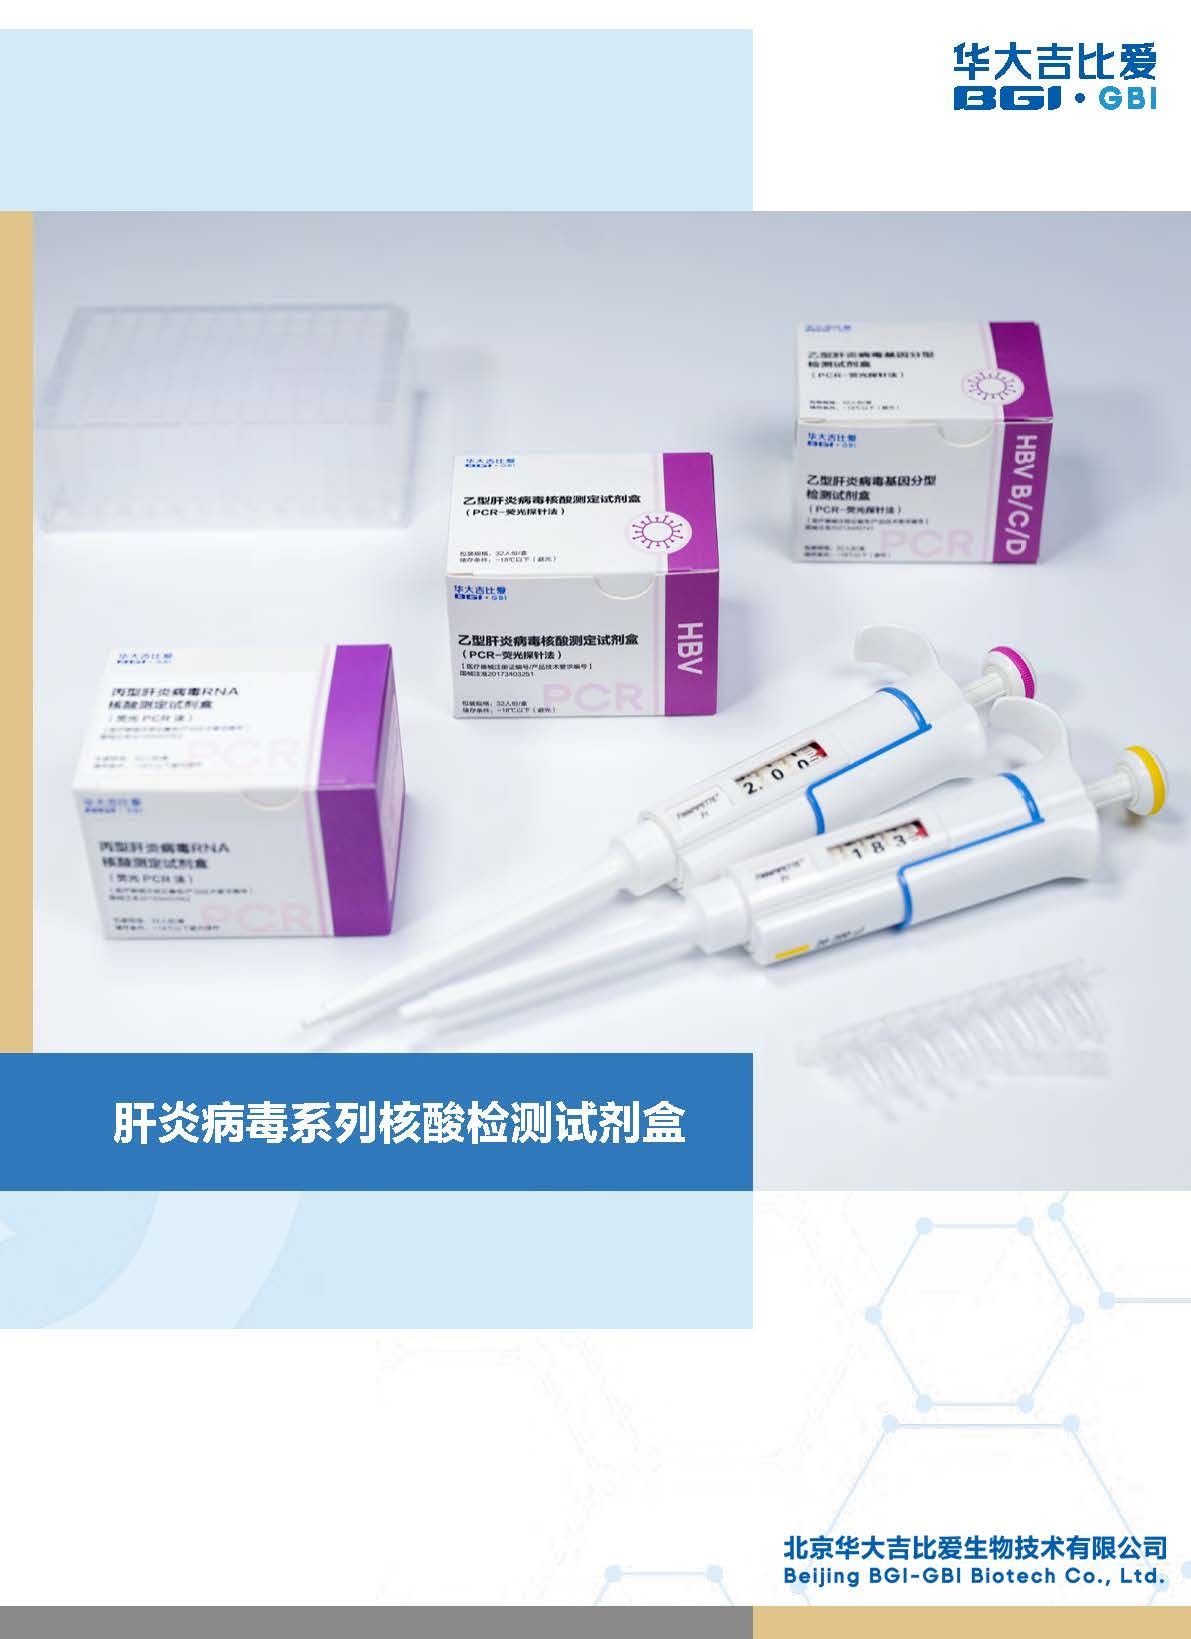 肝炎病毒系列核酸檢測試劑盒